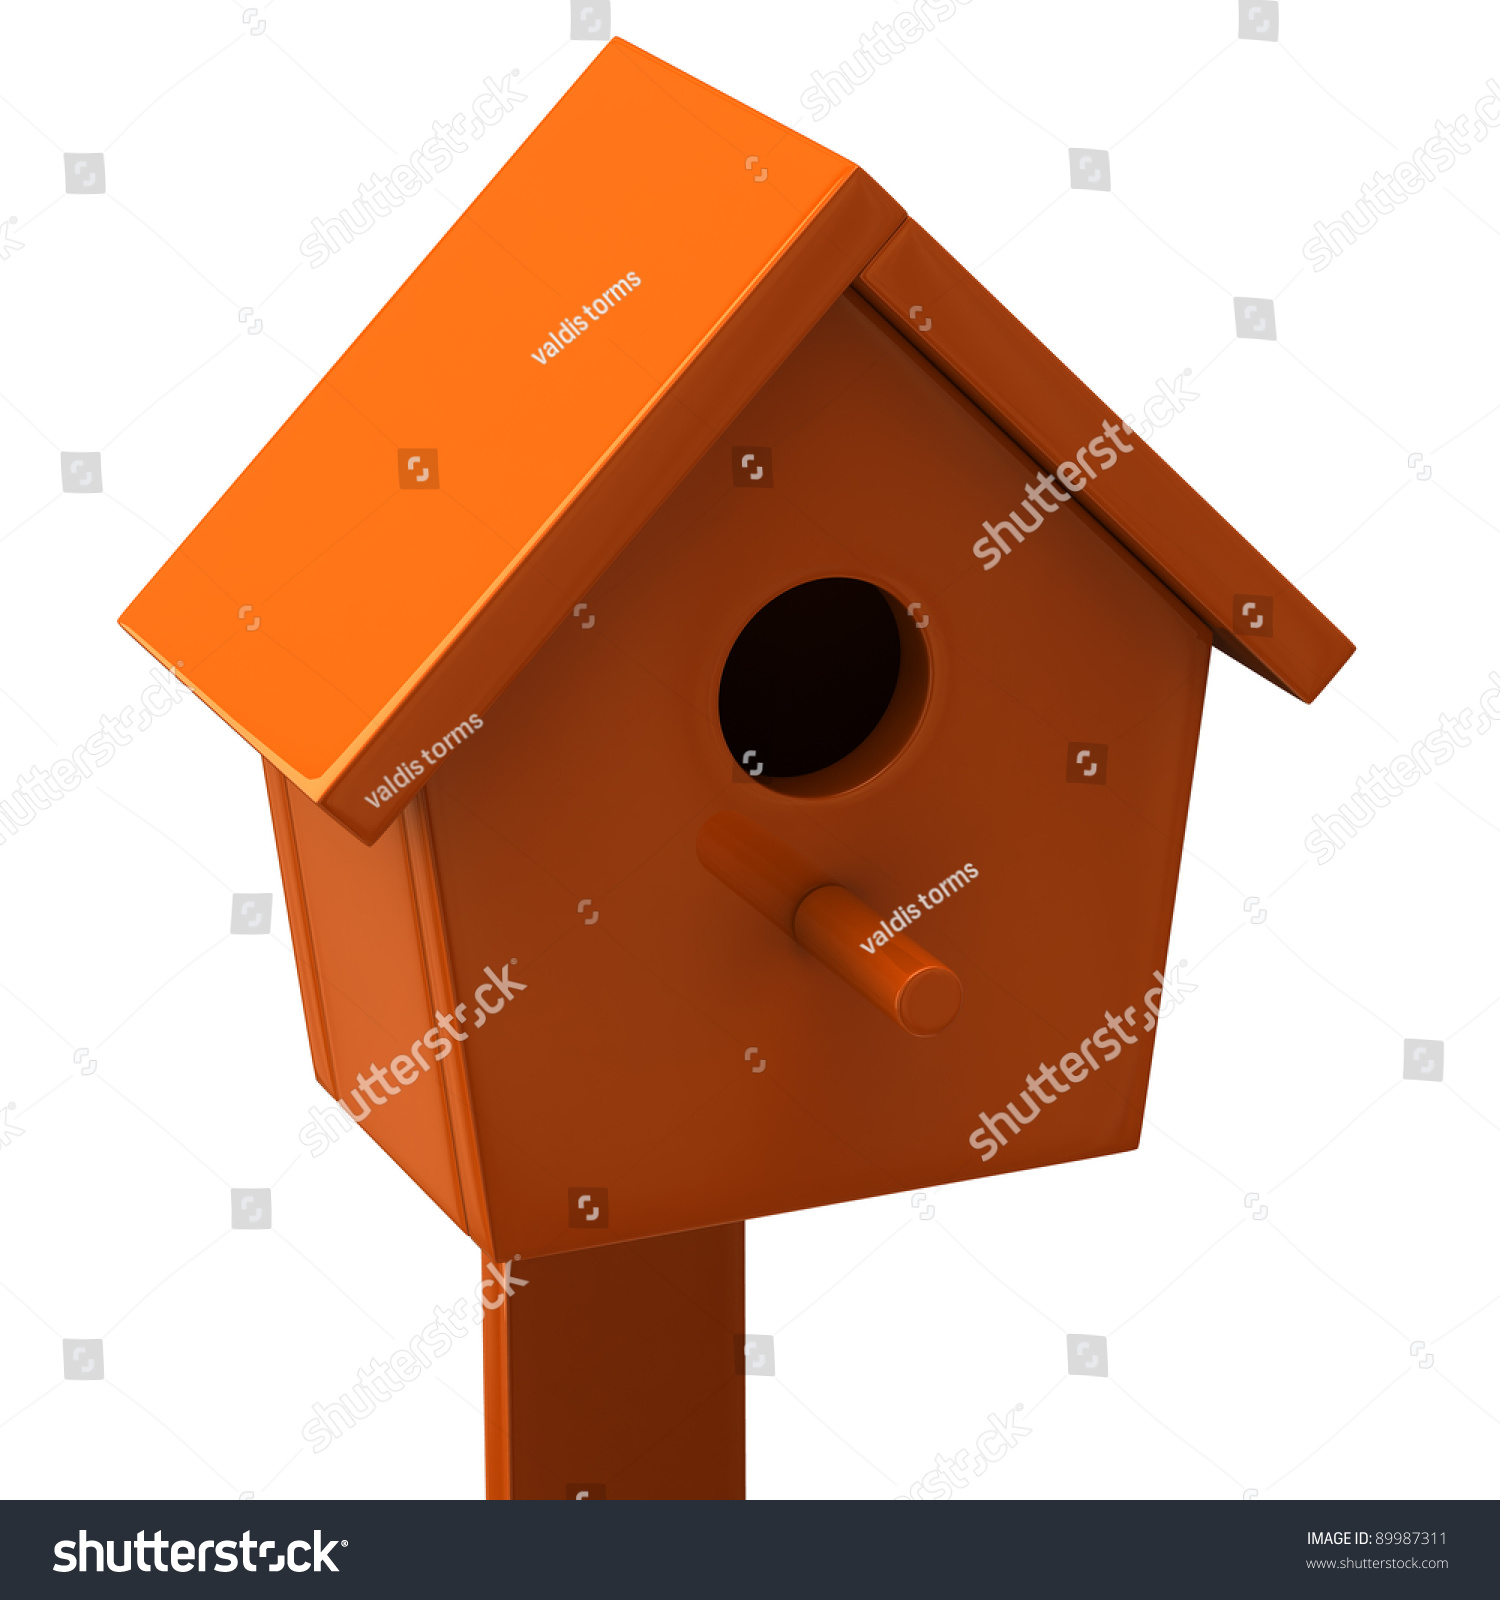 Orange Starling House Stock Illustration 89987311 - Shutterstock